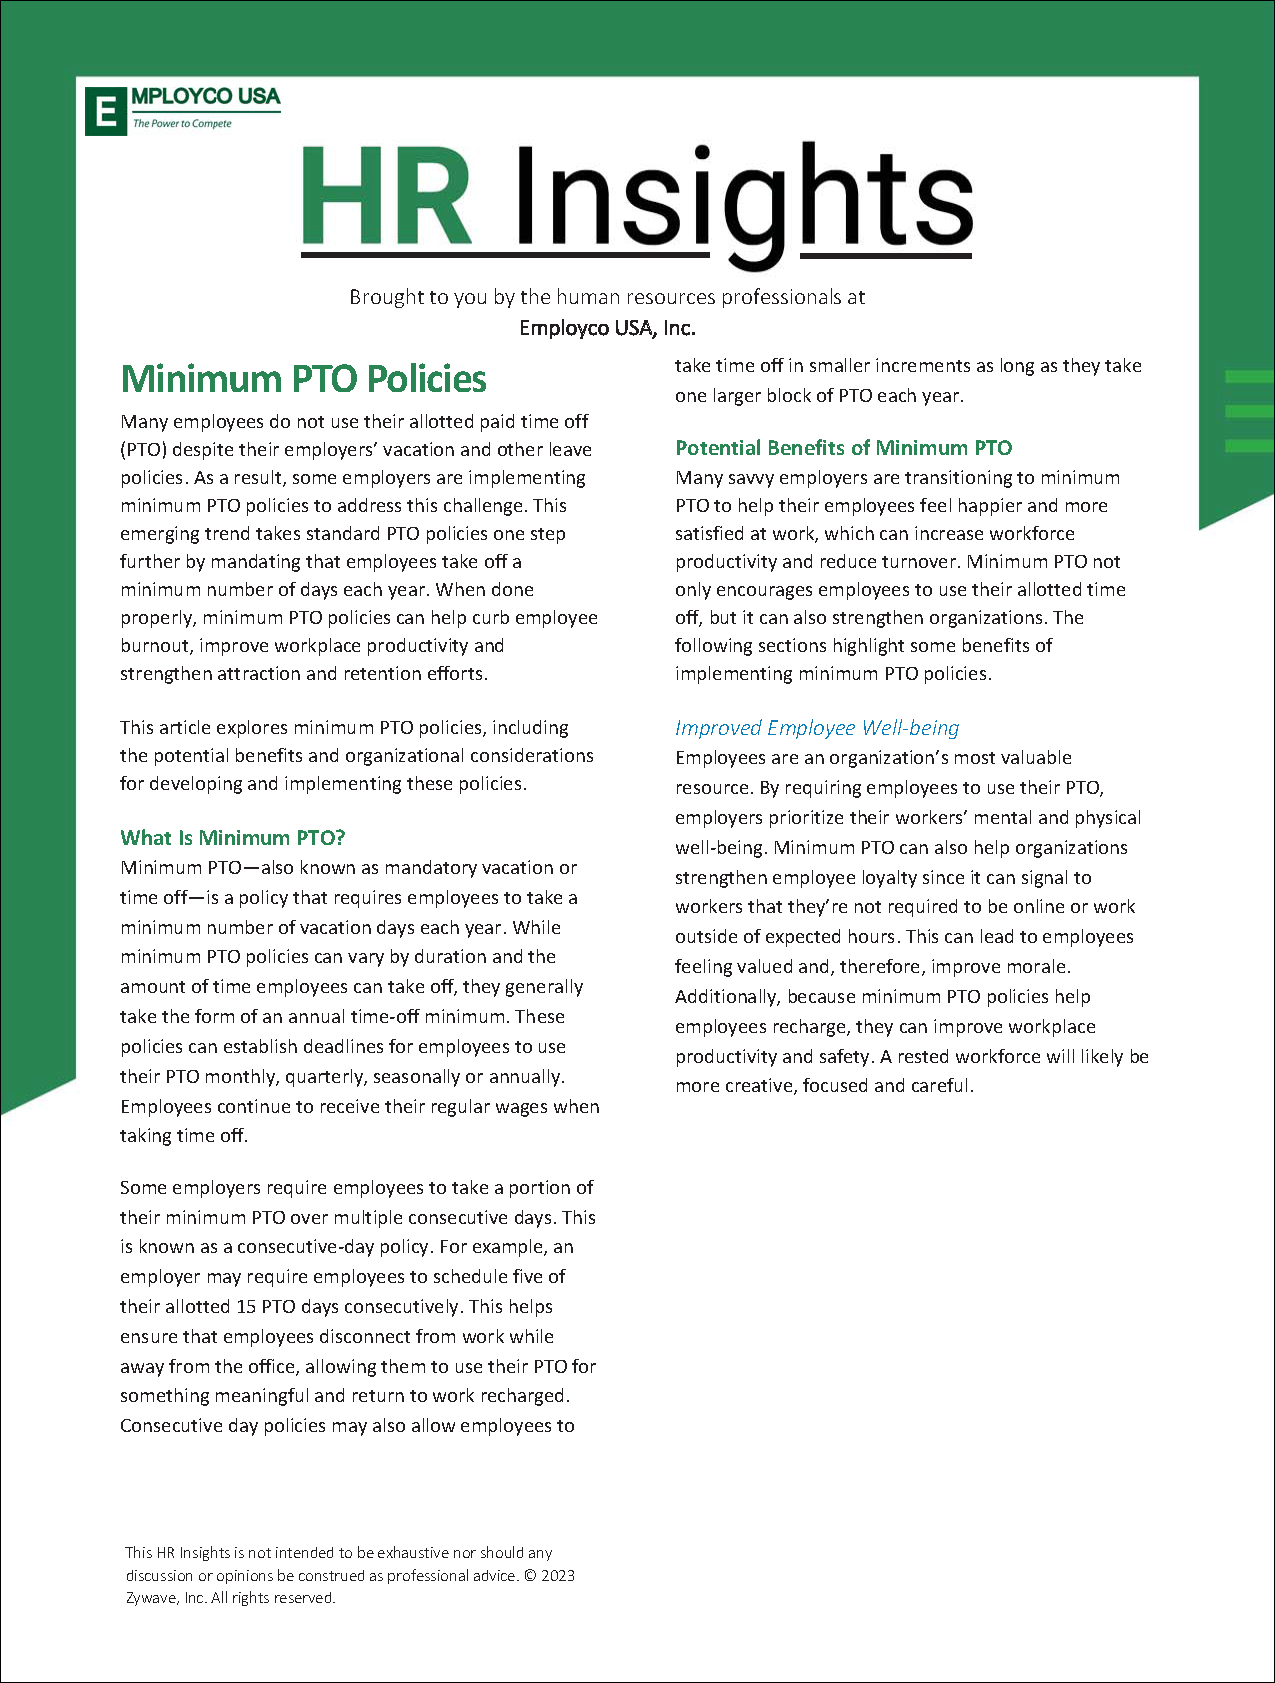 HR Insights – Minimum PTO Policies